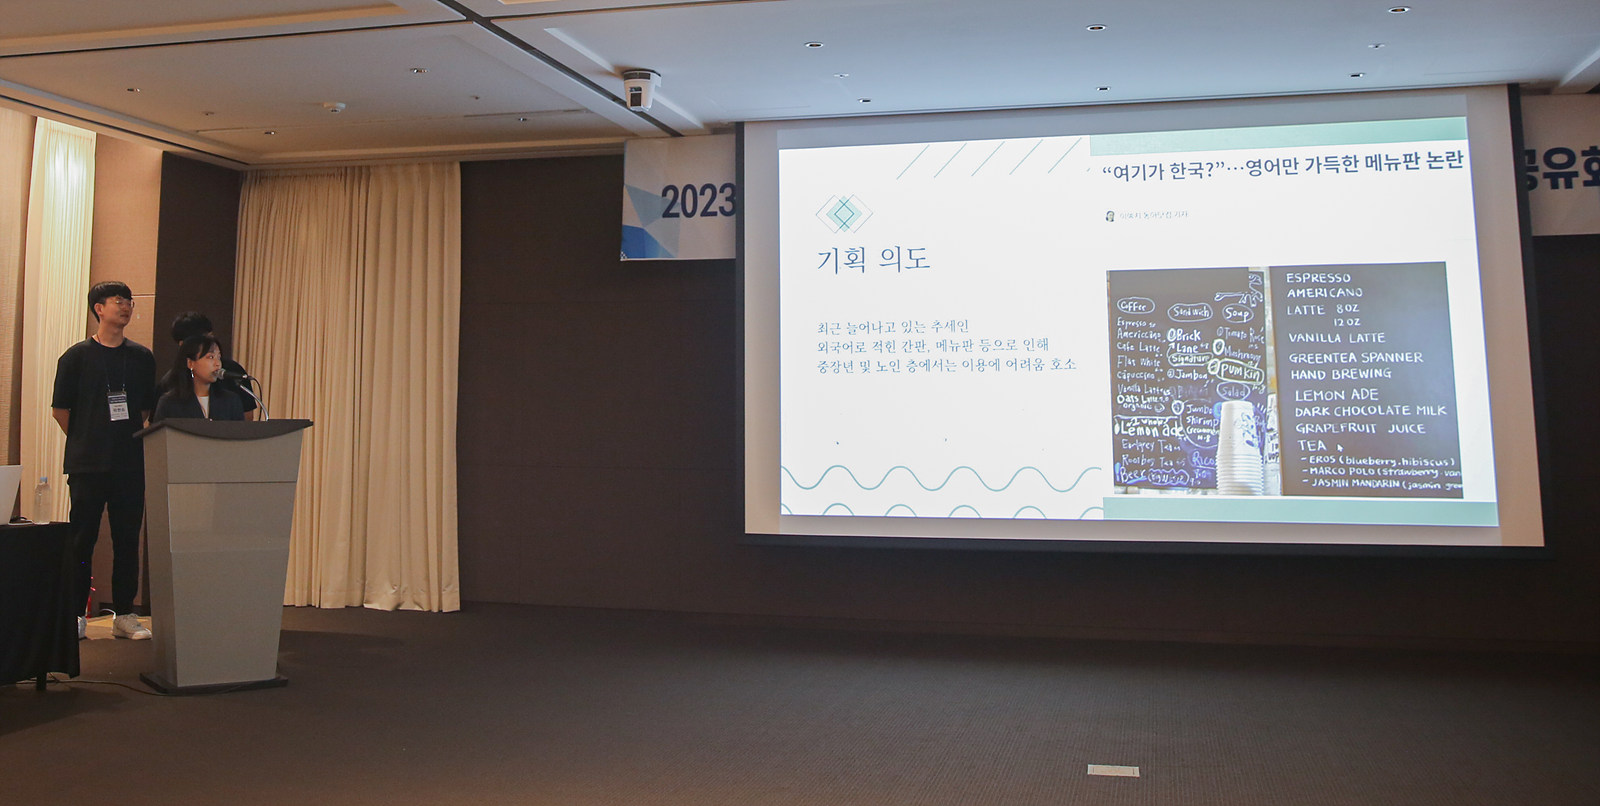 2023 지역혁신사업 리빙랩 식 주제발표공유회 개최